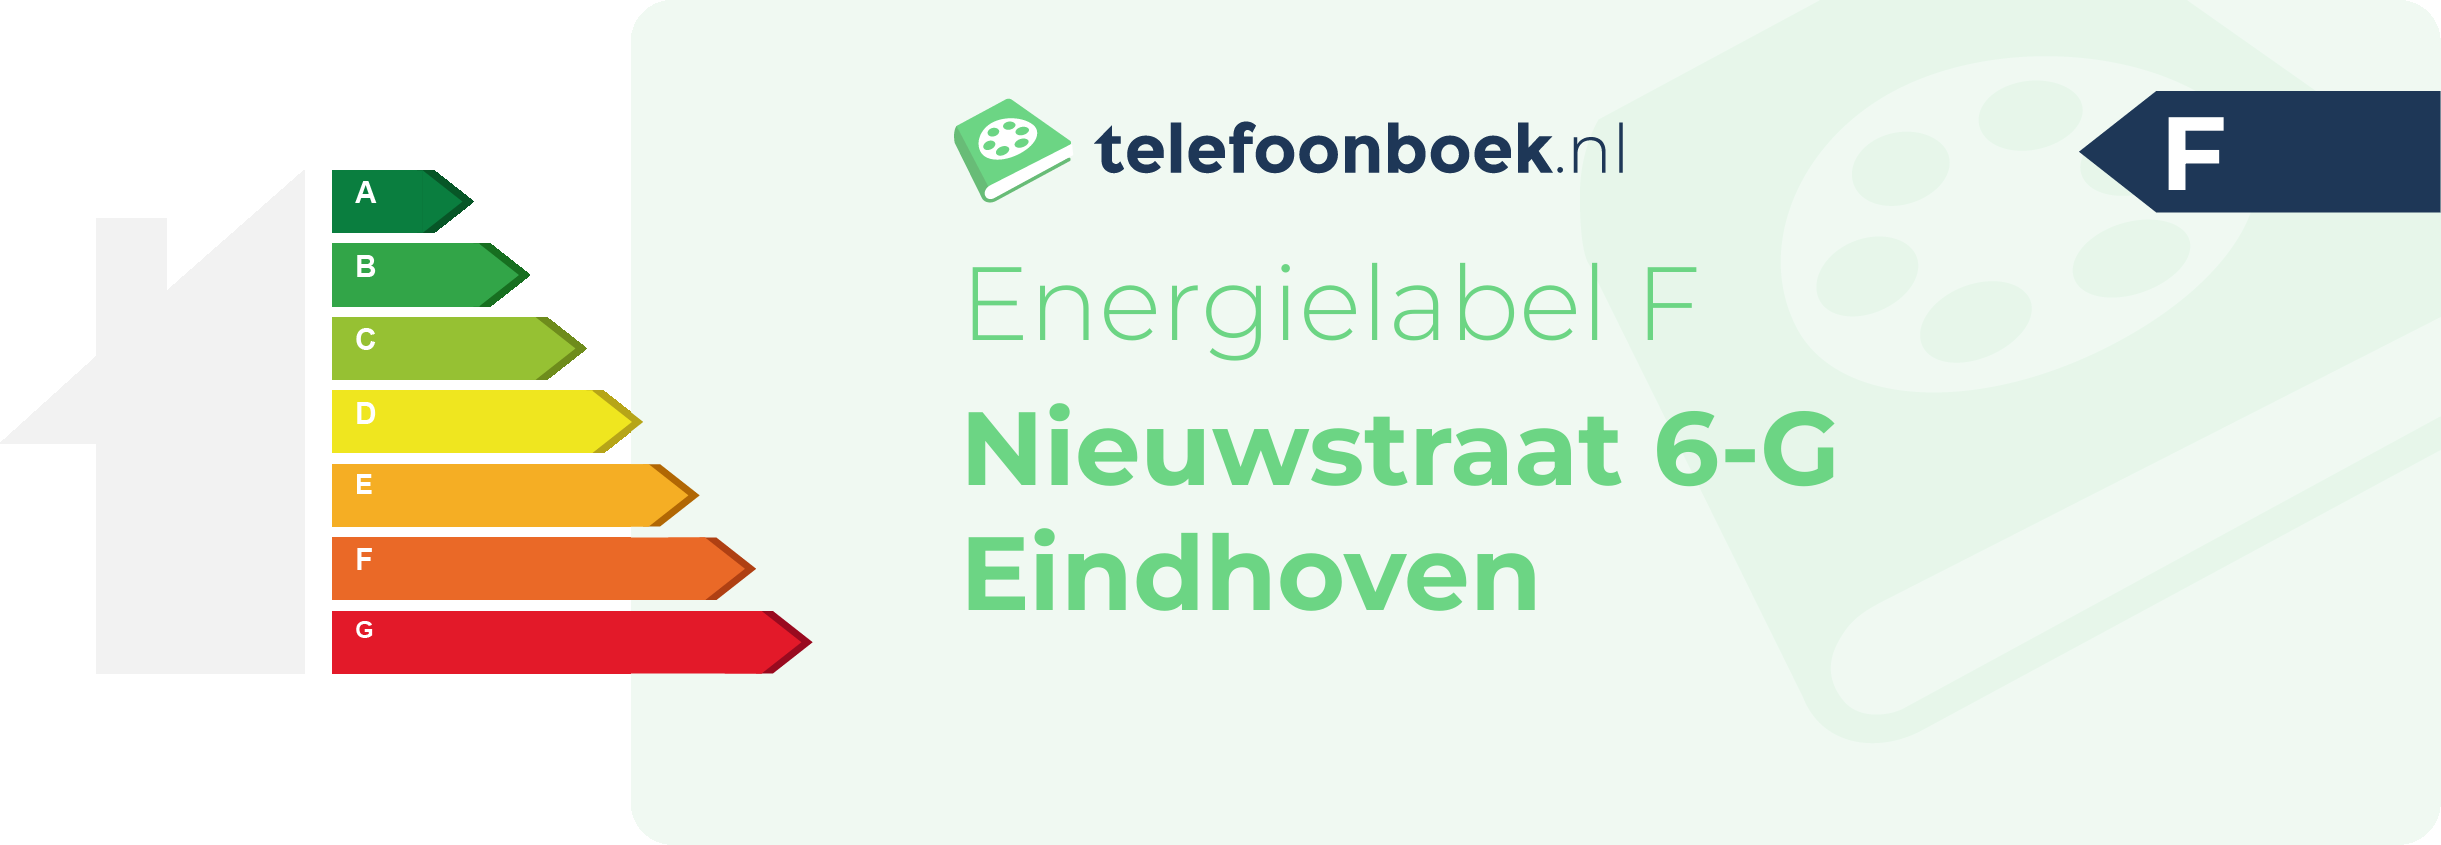 Energielabel Nieuwstraat 6-G Eindhoven